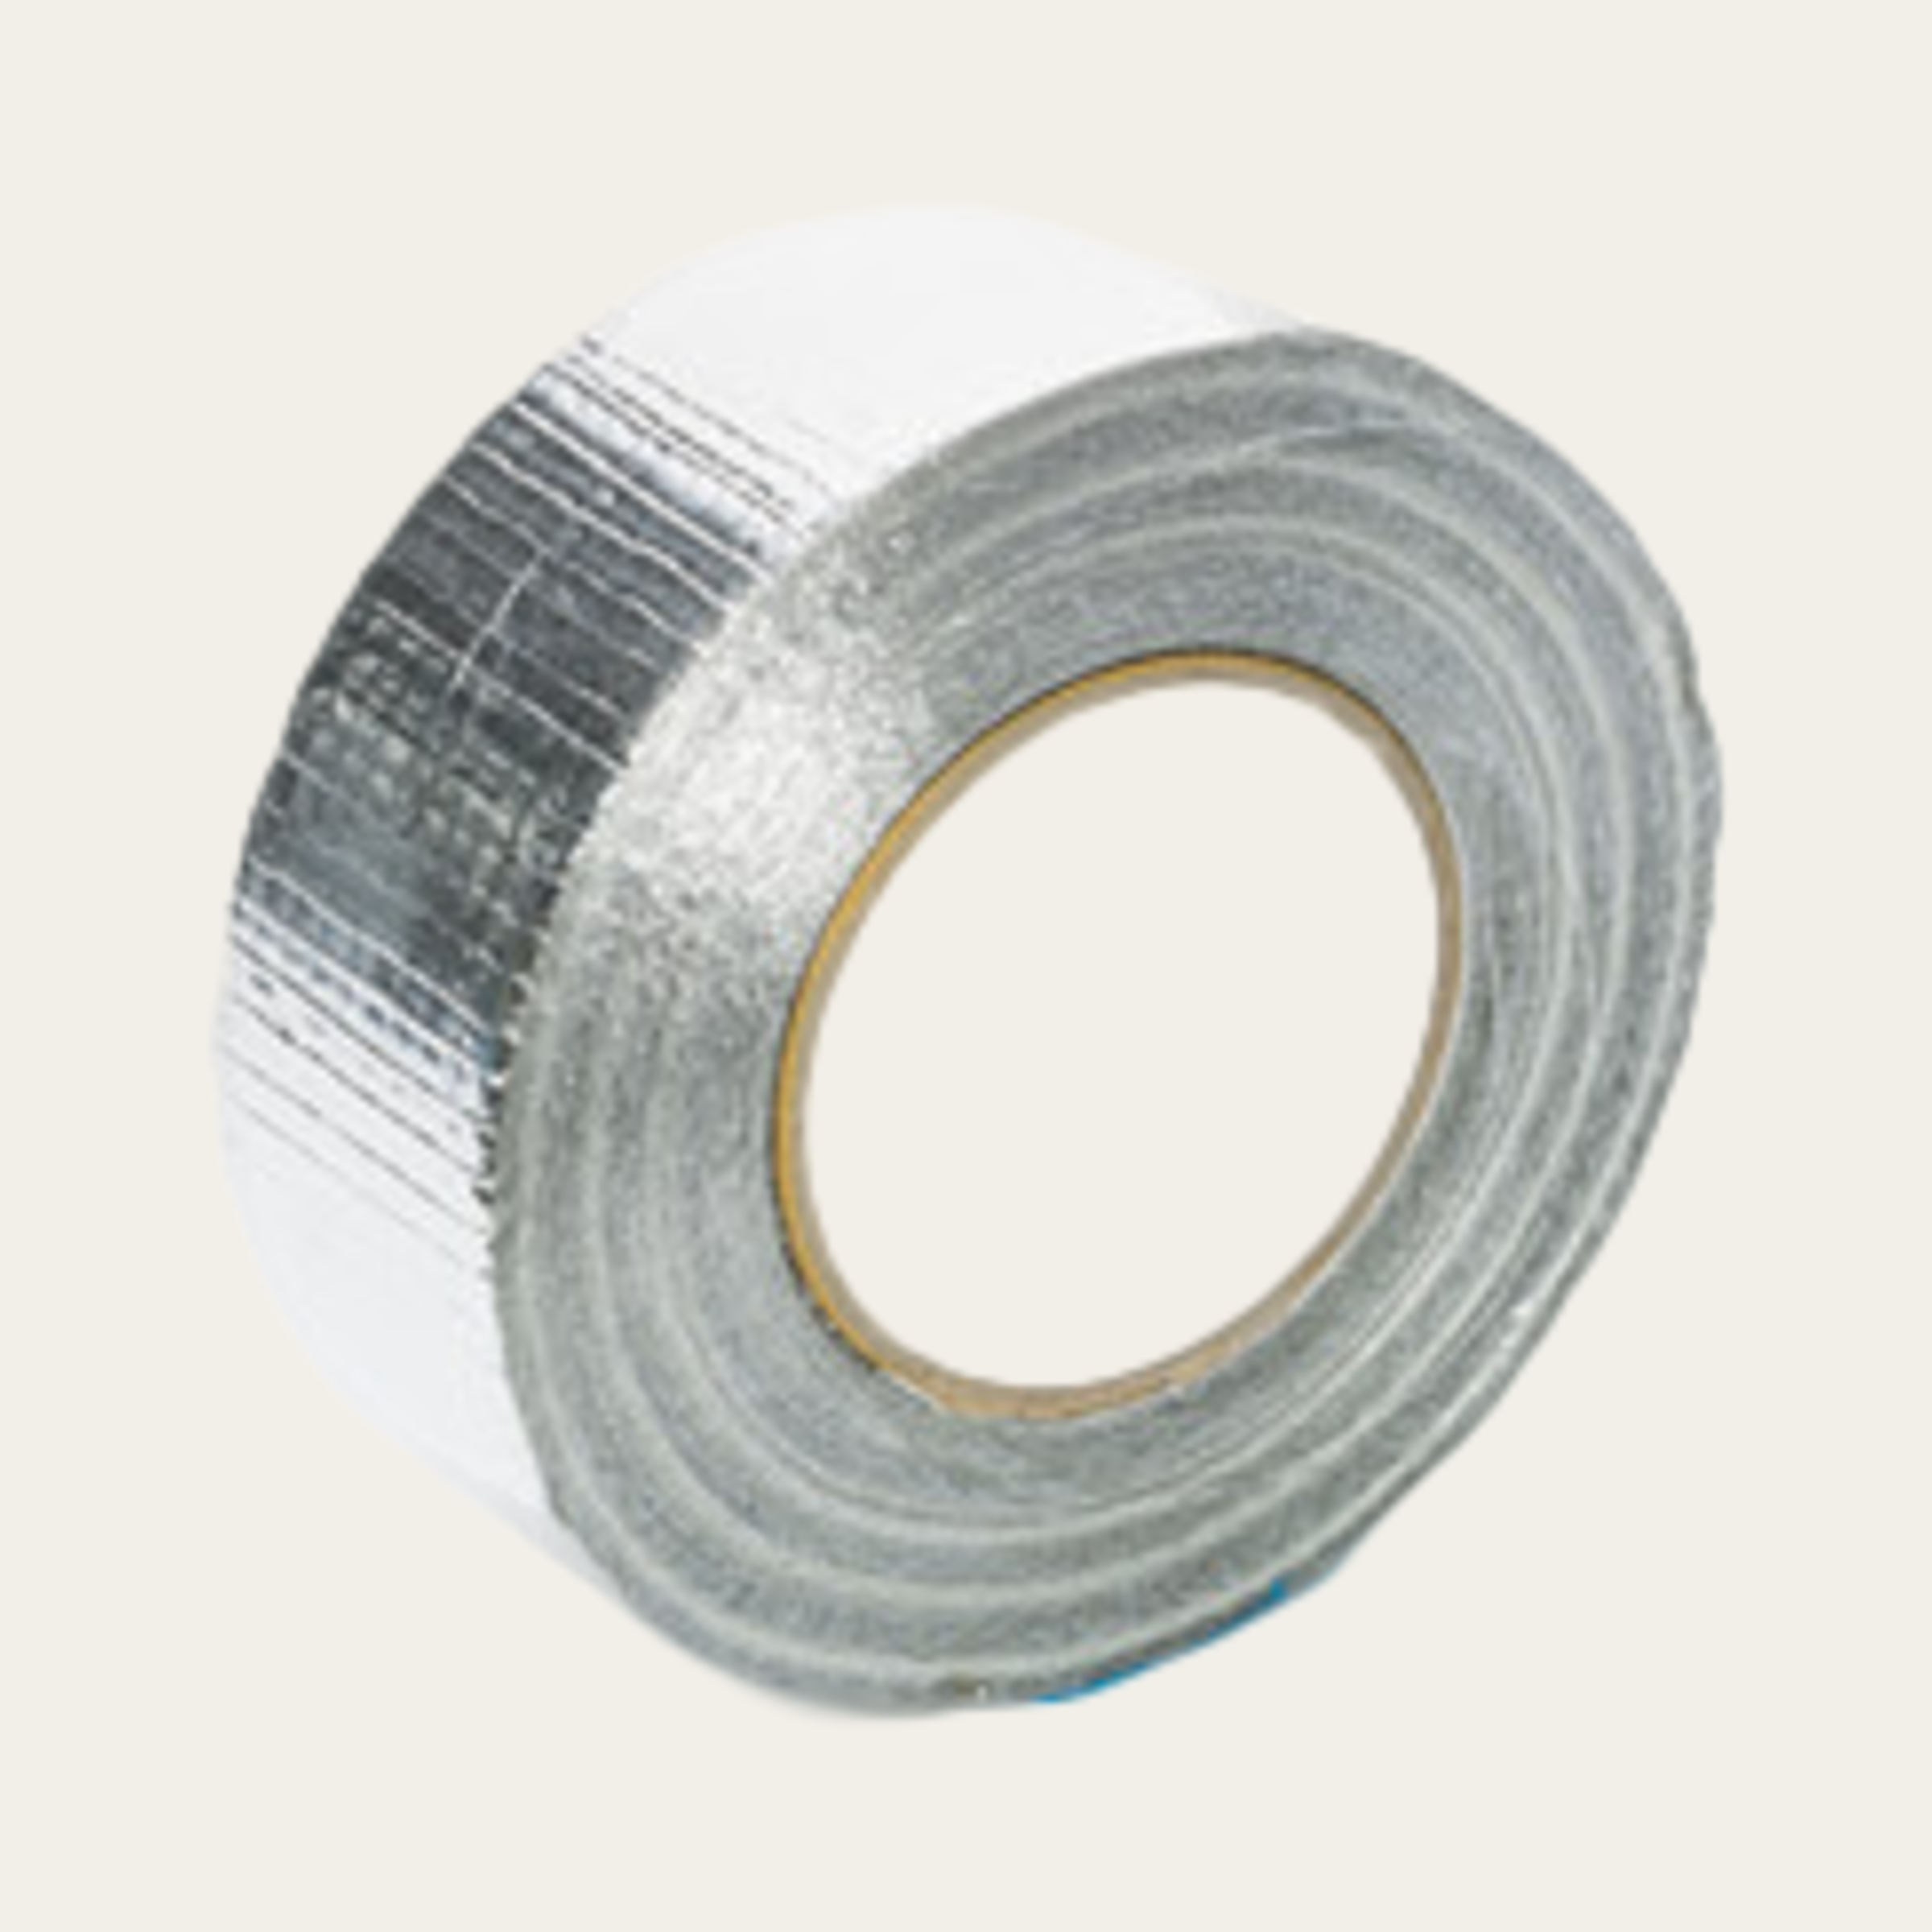 Aluminium Abdichtband, Rolle à 50 m, Breite 50 mm